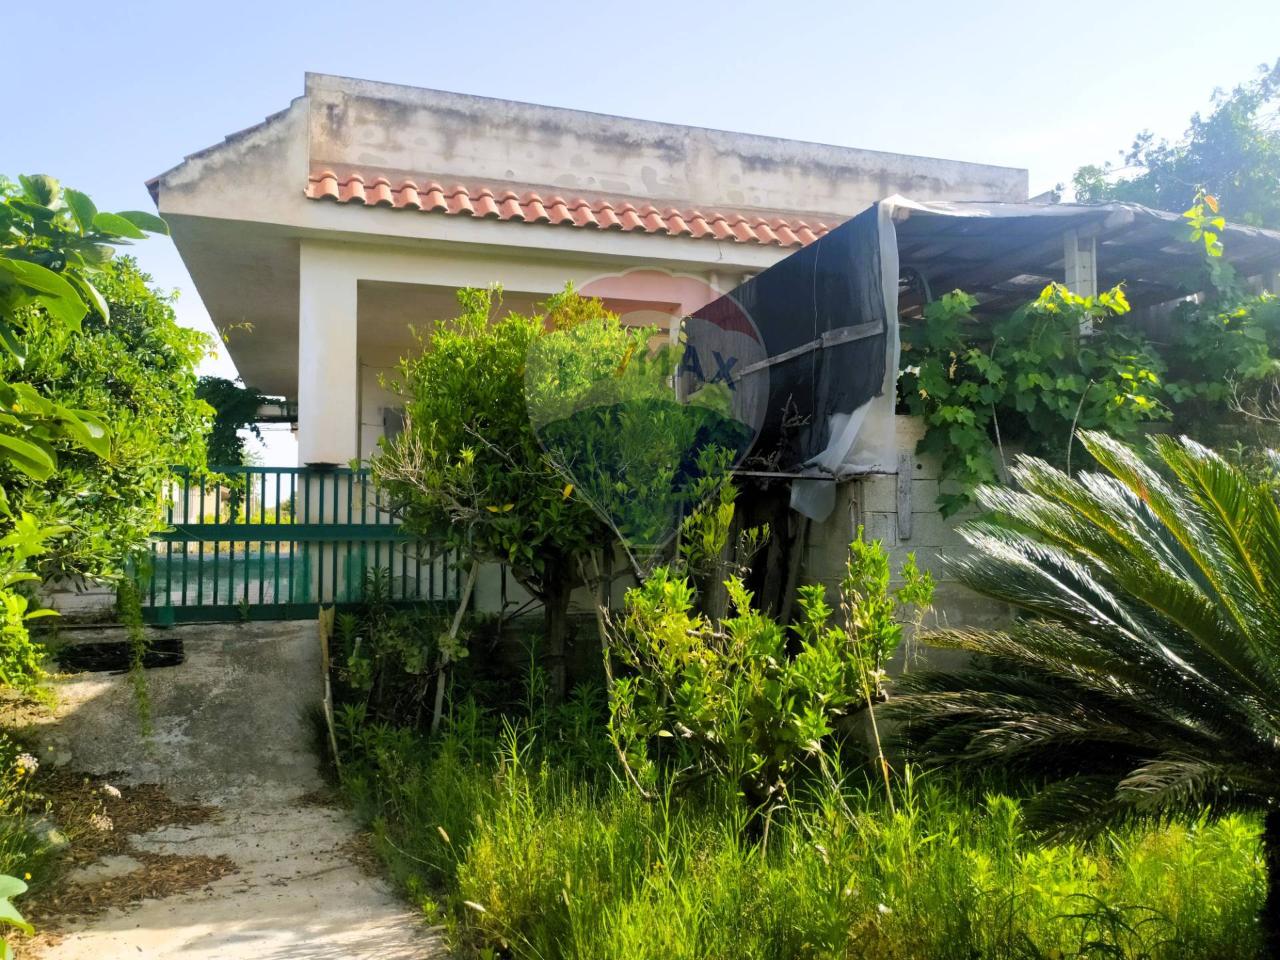 Villa in vendita a Ispica